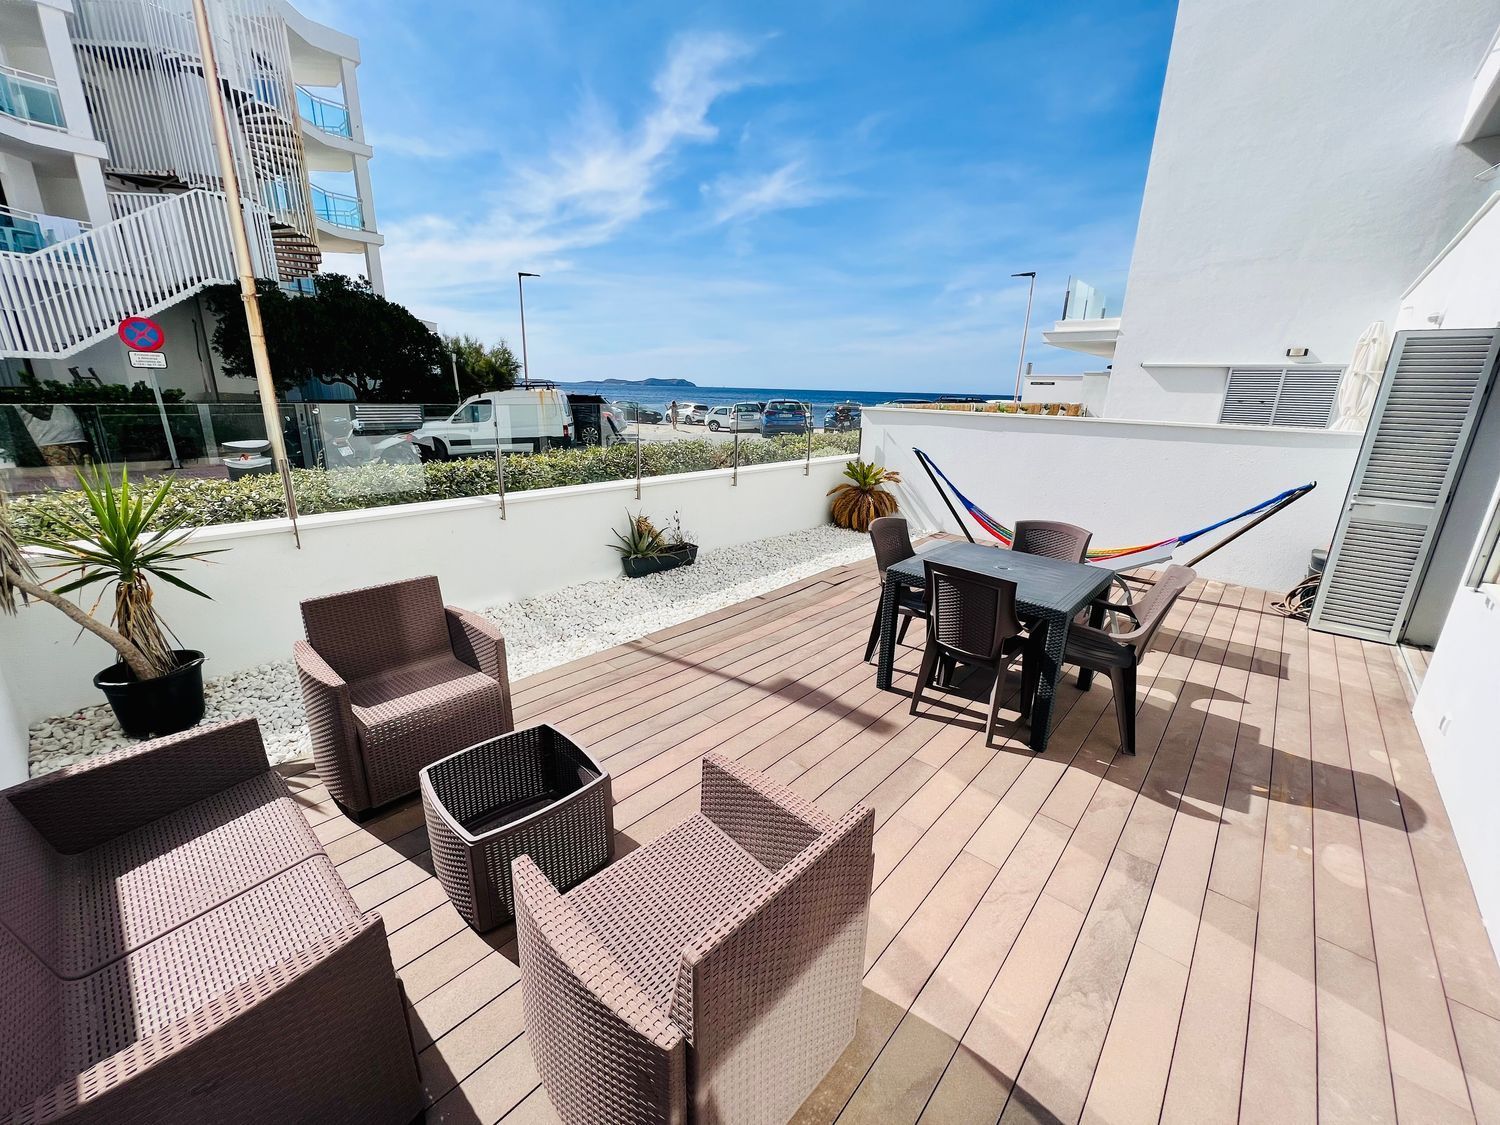 Apartamento térreo à venda em frente ao mar na Calle Madrid, em Ibiza